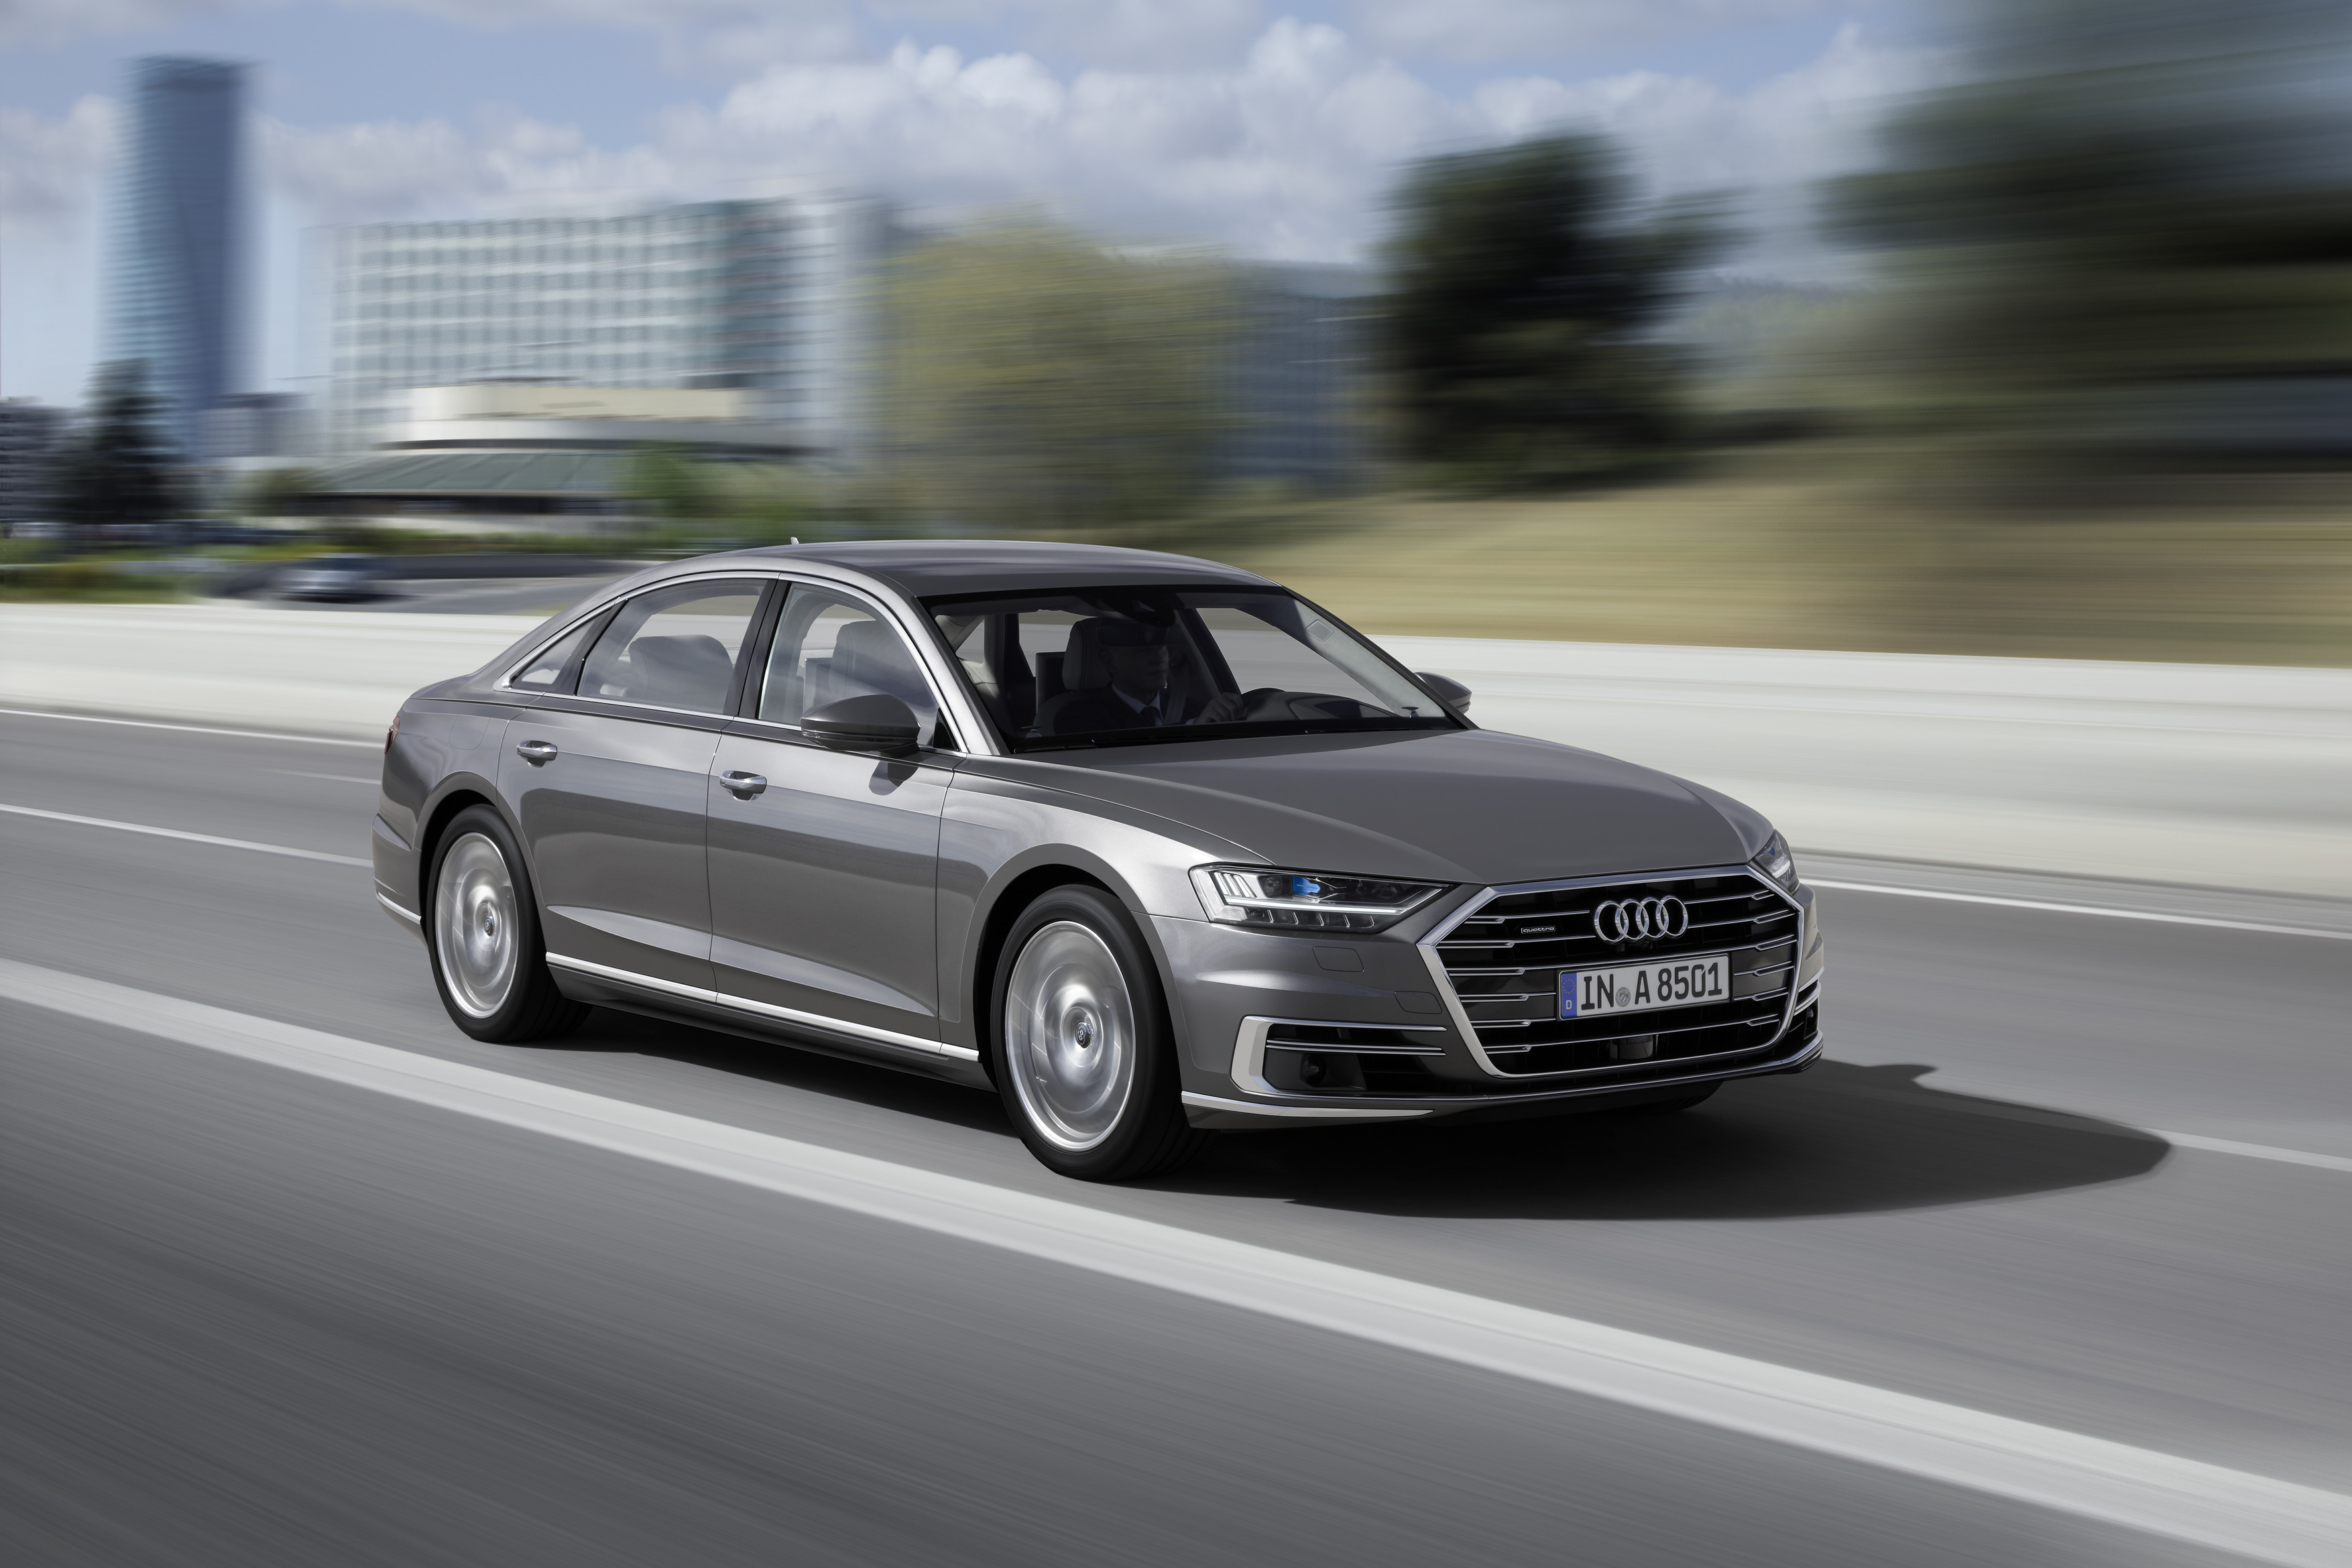 Audi A8 - kép forrása: Audi Media Center